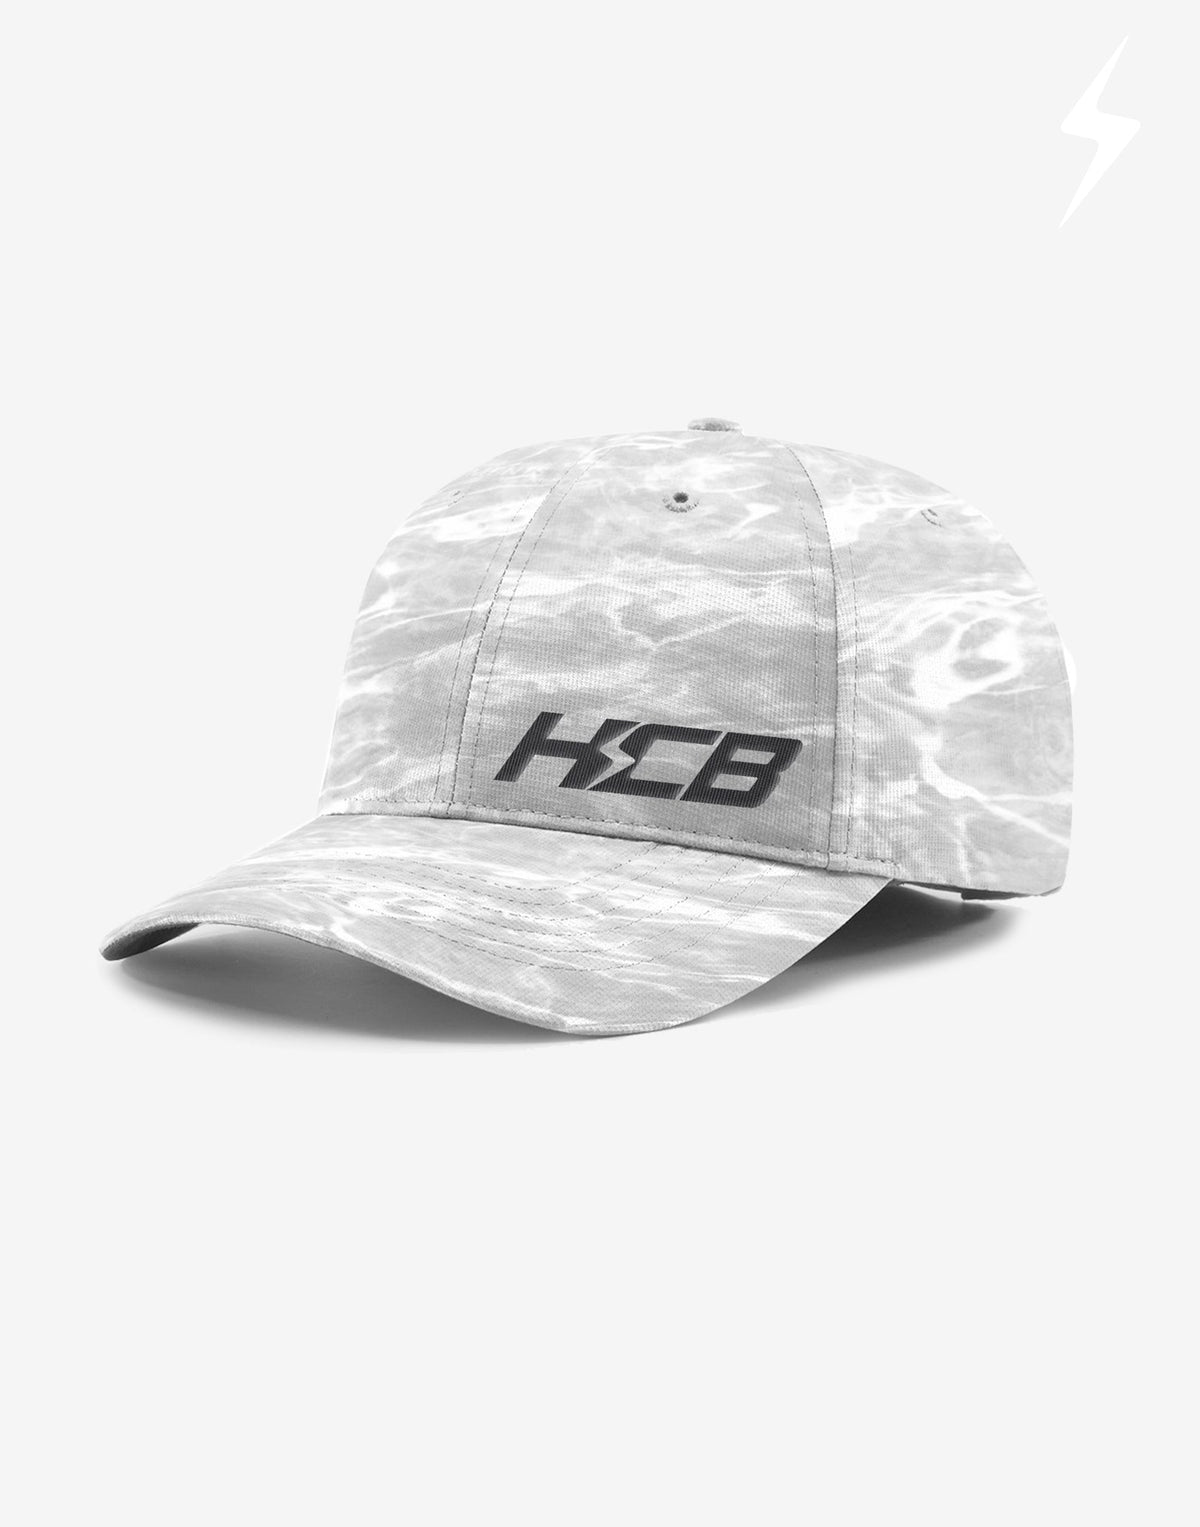 HCB MOSSY OAK BONEFISH CAP - GRAY